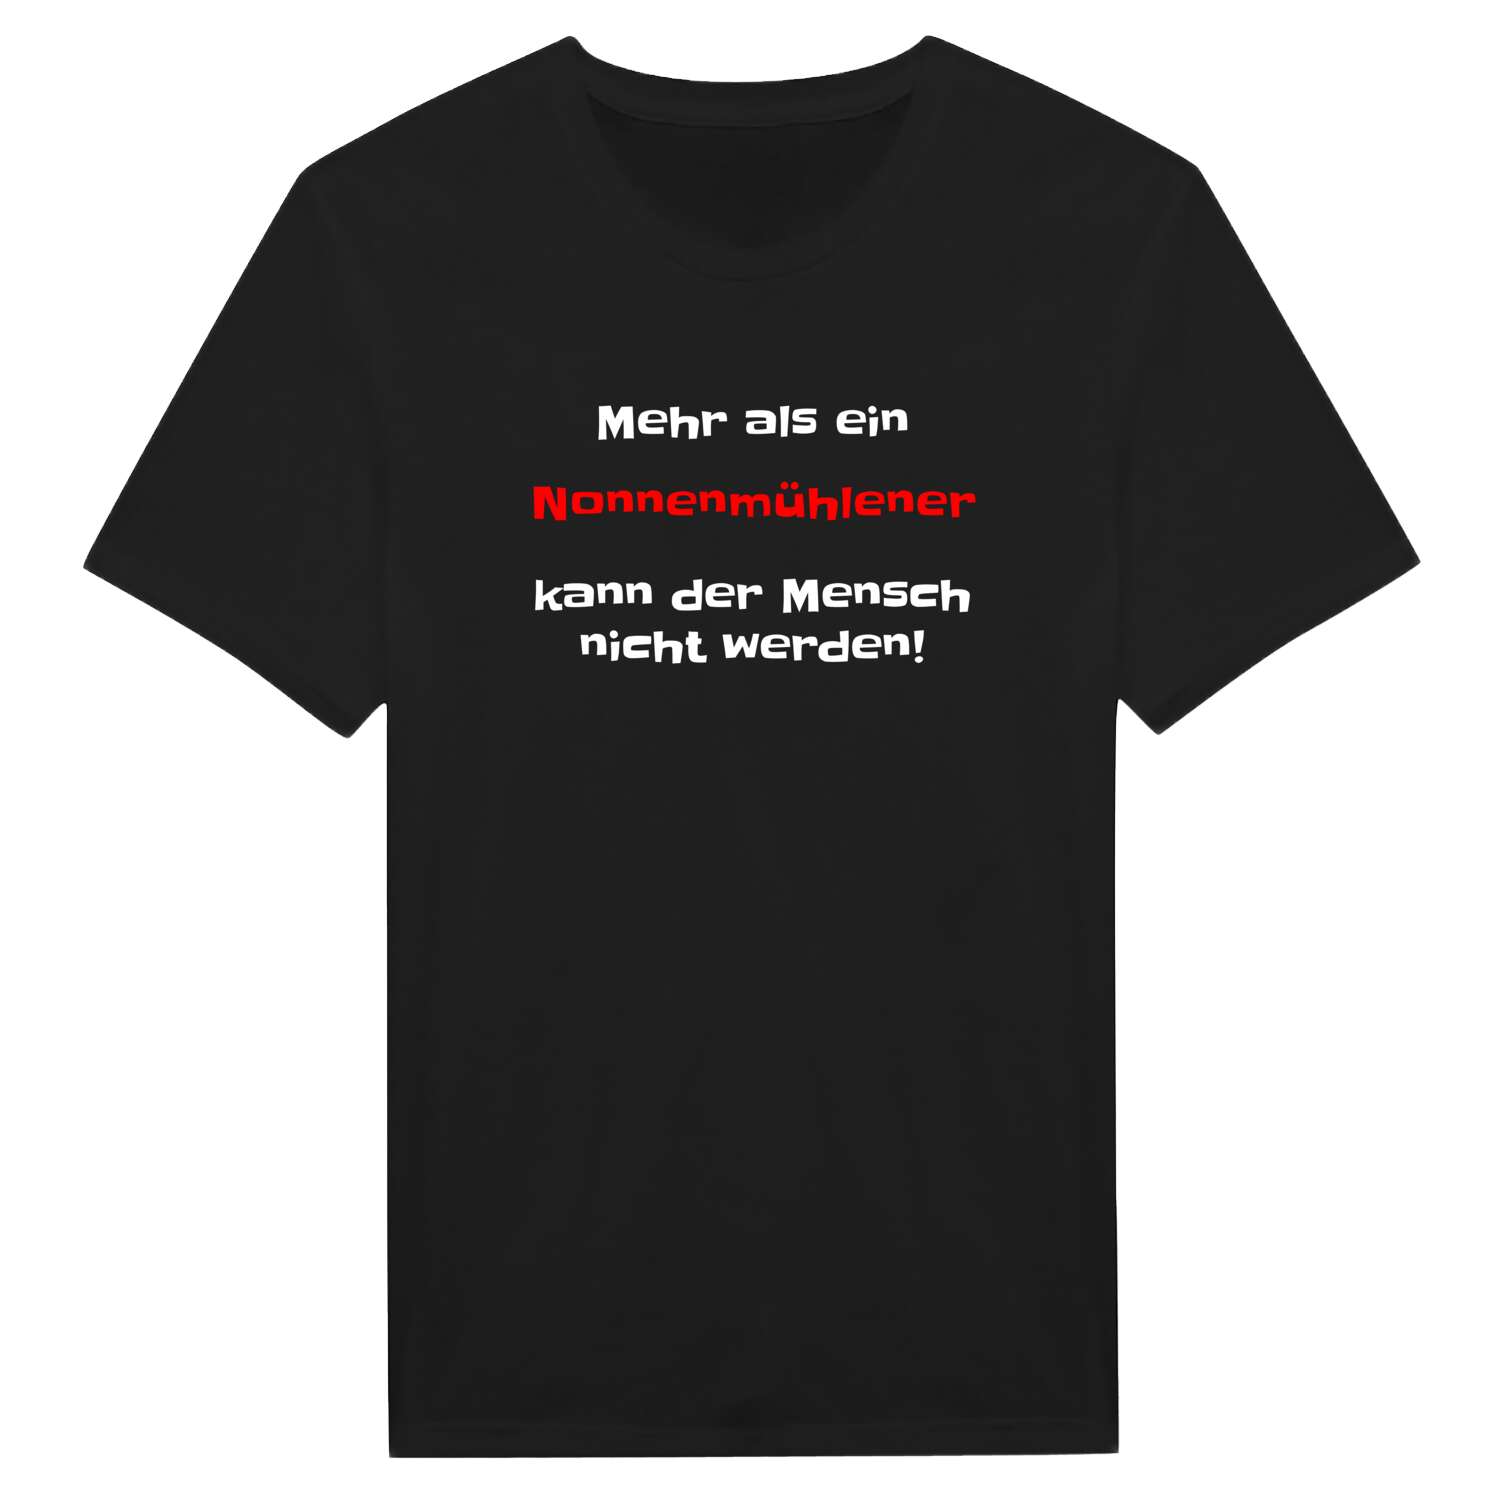 Nonnenmühle T-Shirt »Mehr als ein«